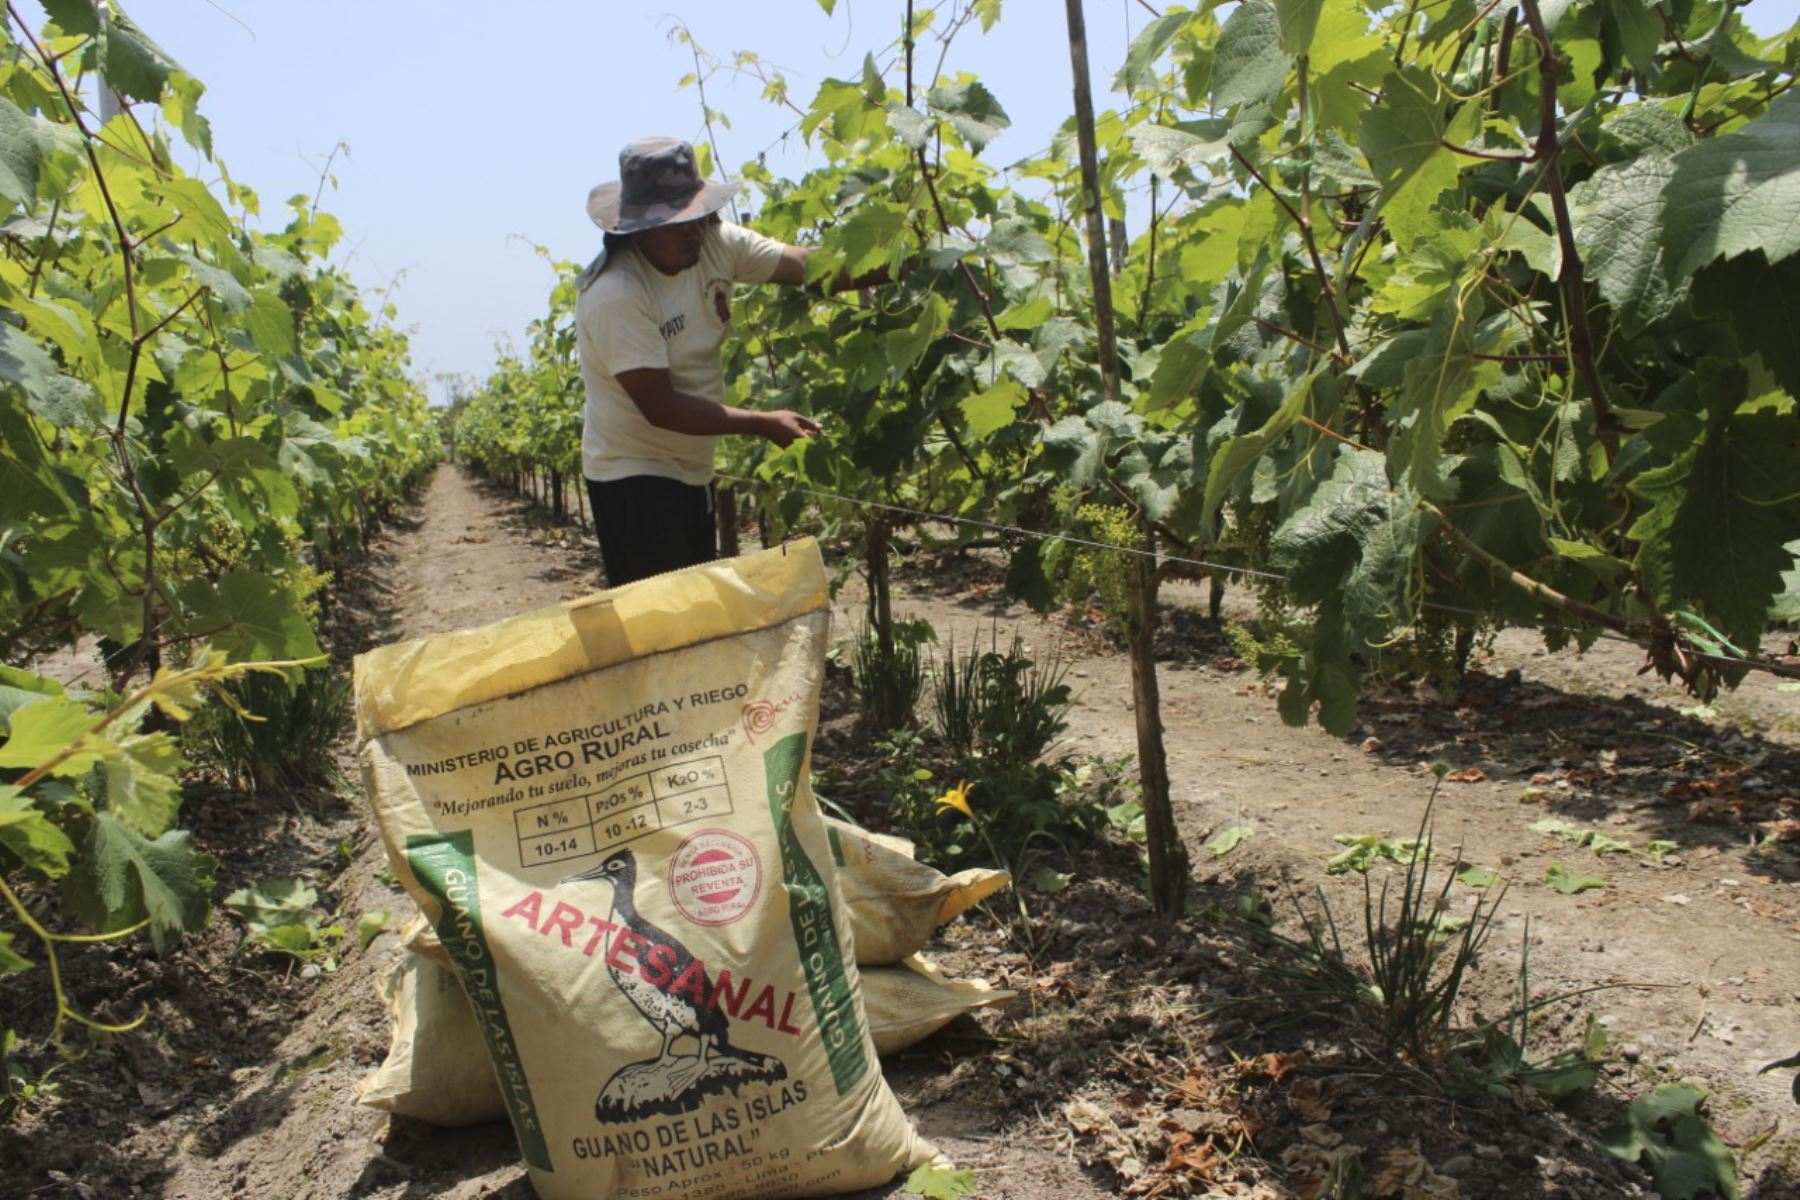 Agro Rural comercializa el guano de las islas a un precio social de S/. 60 por saco, con la finalidad de solucionar el alto precio de los fertilizantes en el mercado nacional e internacional. Foto: ANDINA/difusión.